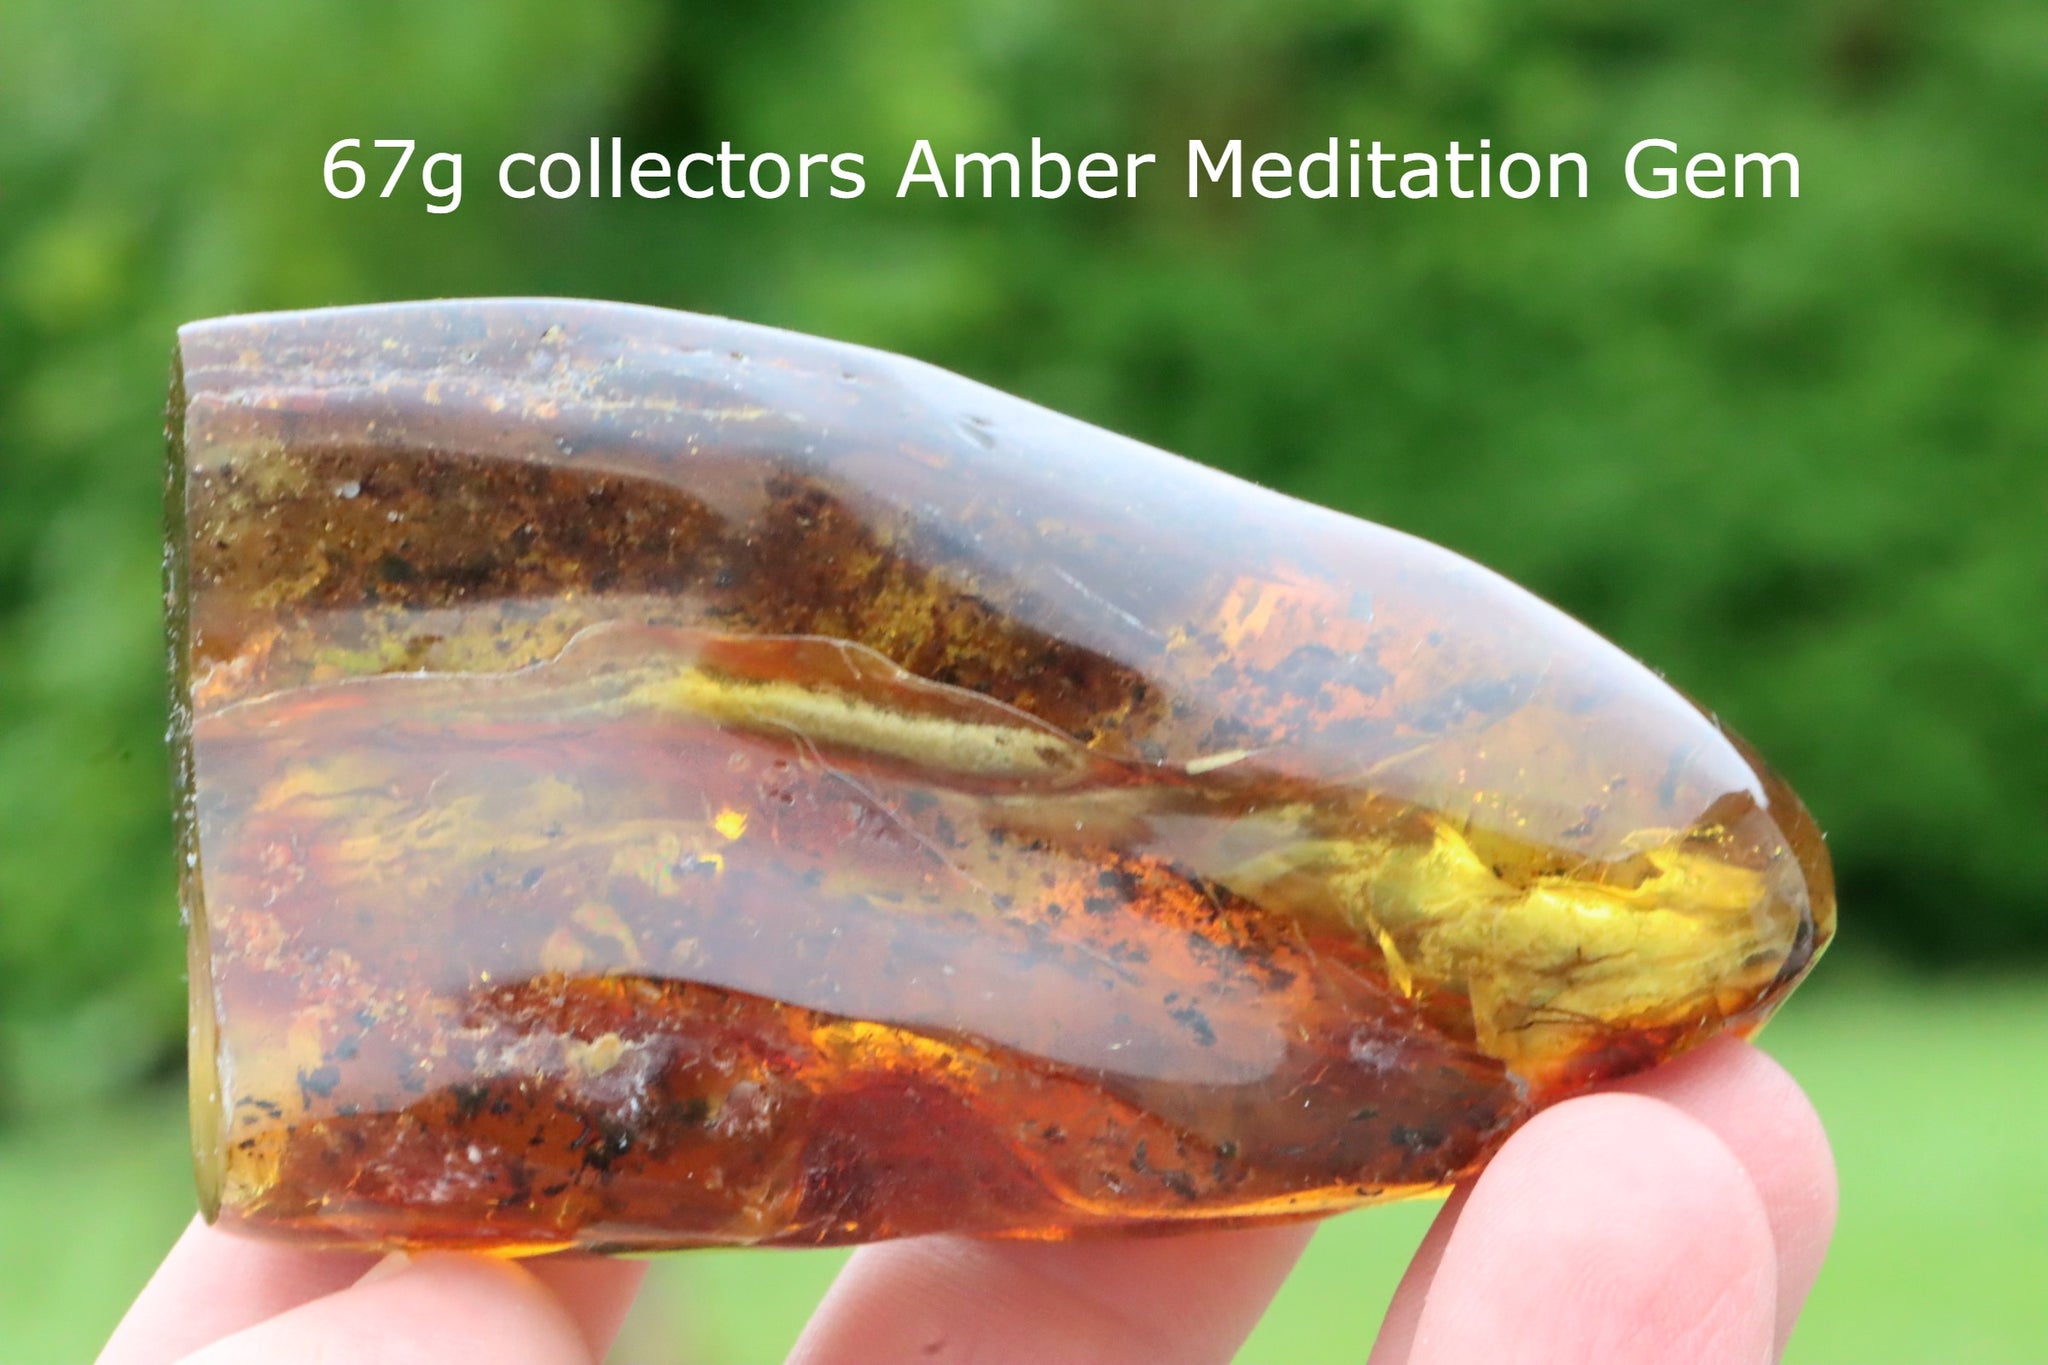 67g collectors Amber Meditation Gem